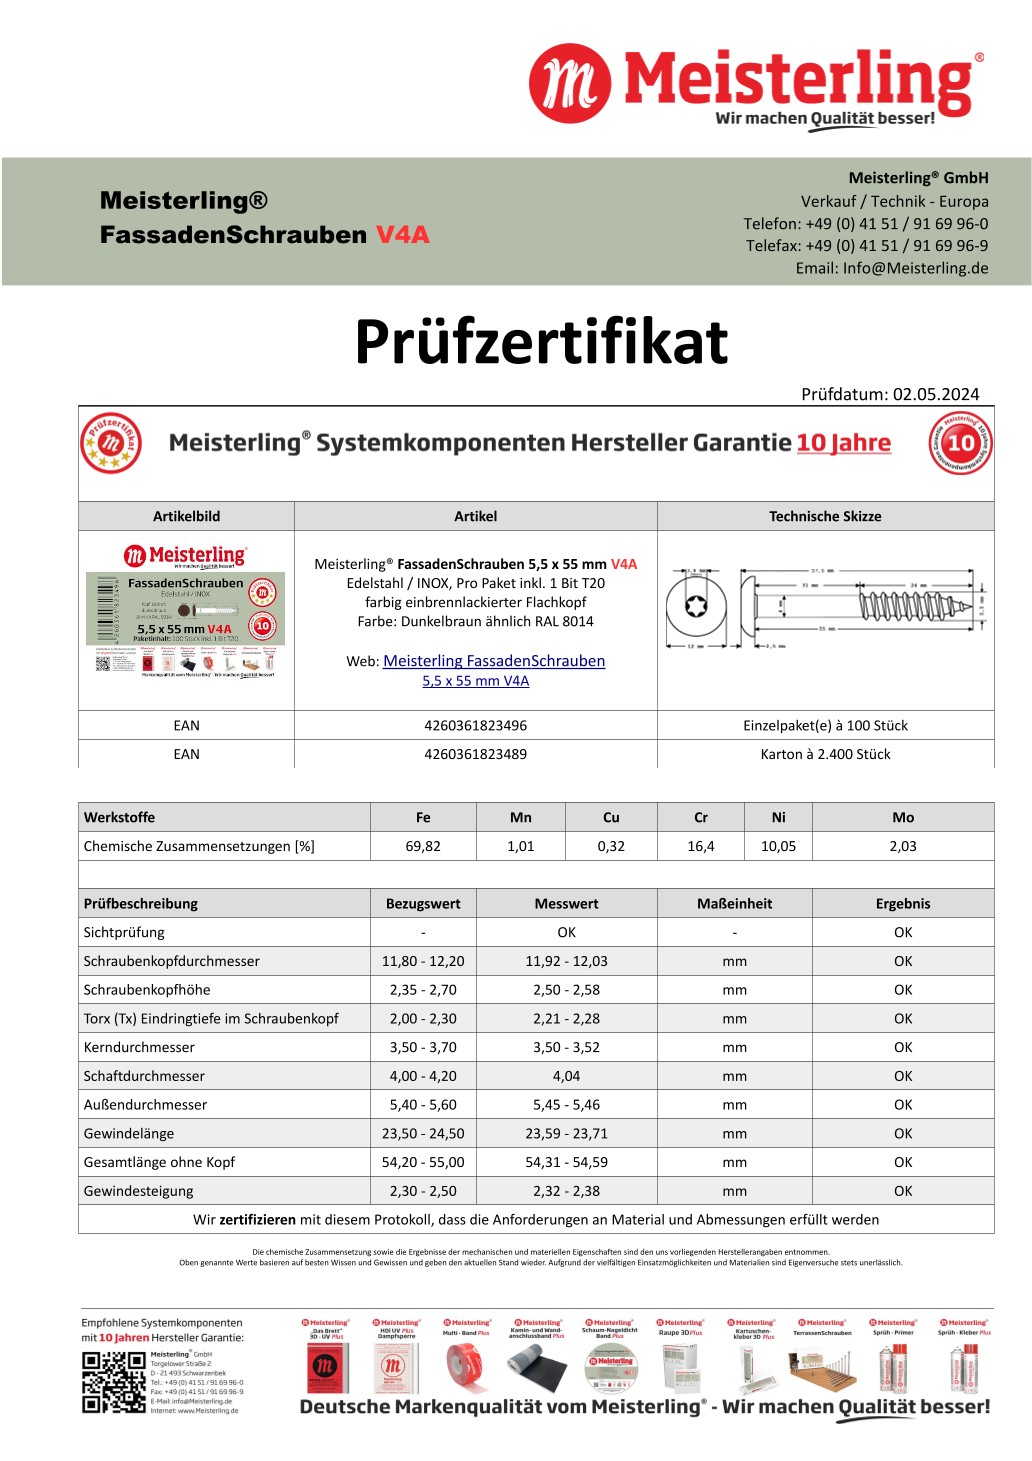 Prüfzertifikat Meisterling® FassadenSchrauben 5,5 x 55 mm V4a dunkelbraun